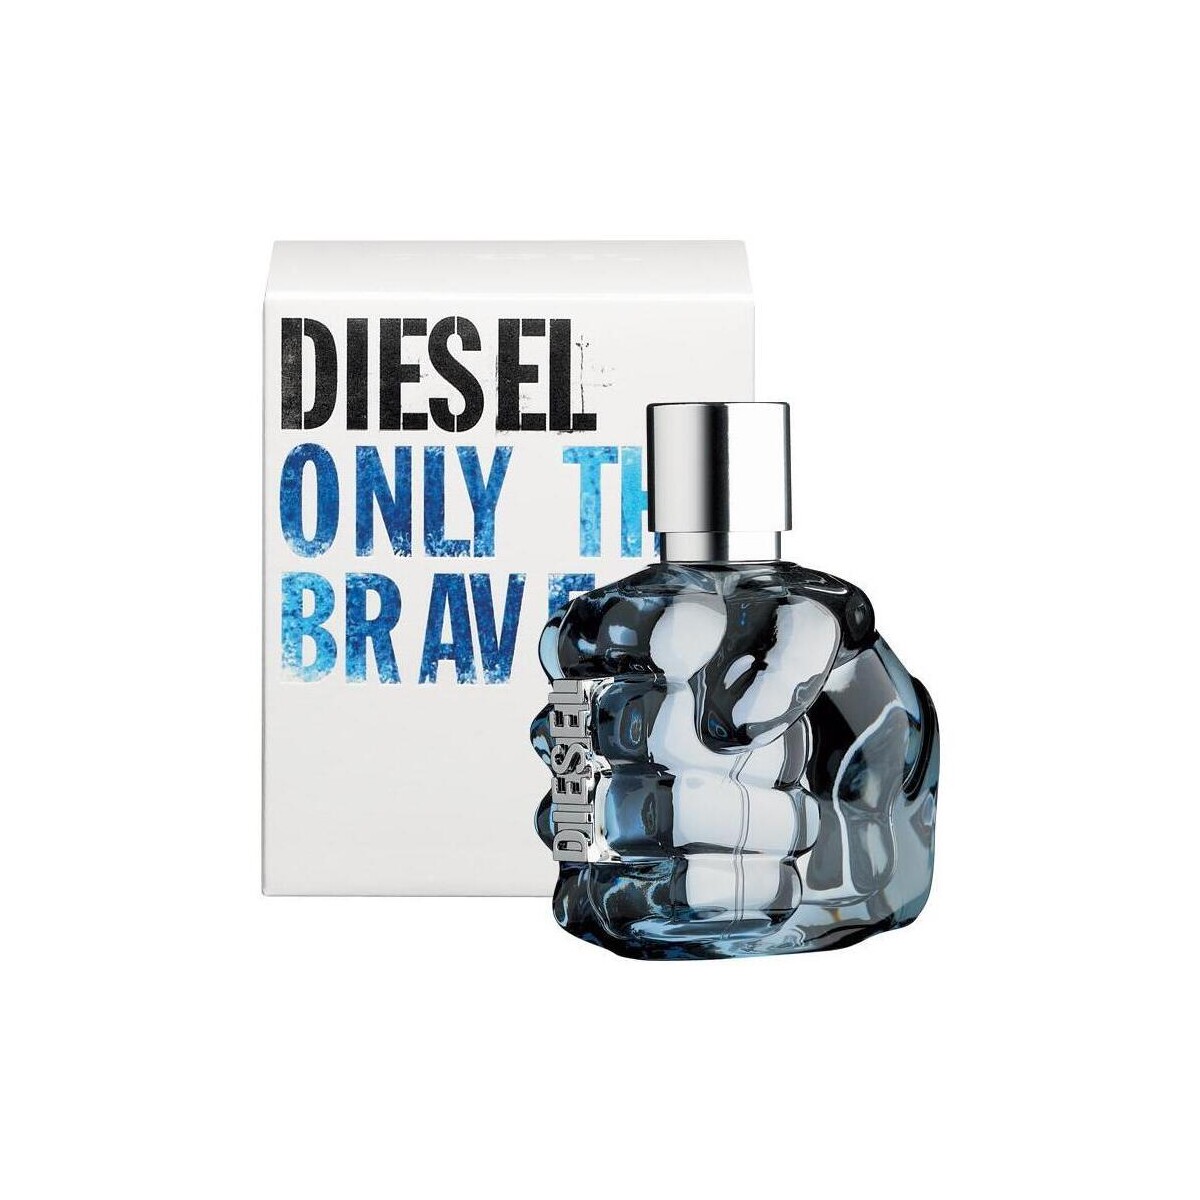 Diesel Only The Brave - cologne - 200ml - spray Only The Brave - eau de toilette - 200ml - vaporisateur e8PTevua